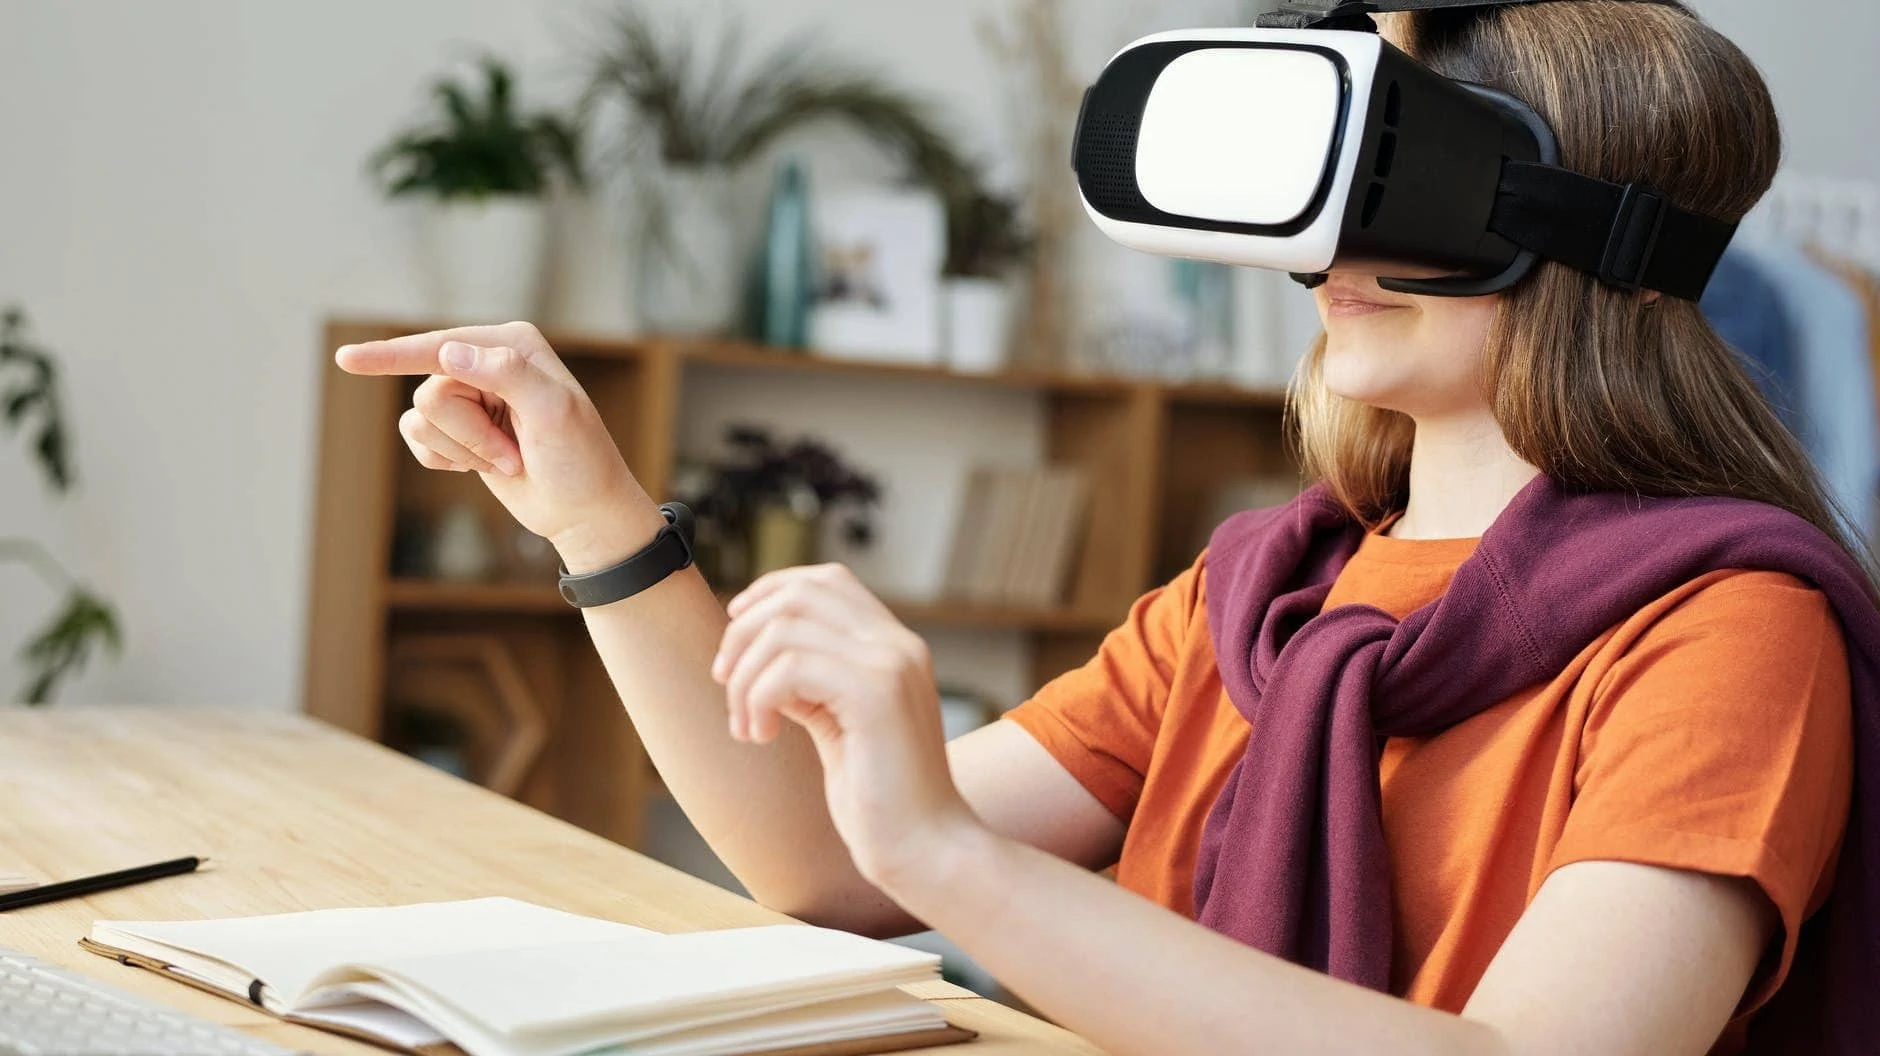 Meisje zit aan haar bureau met een VR-bril